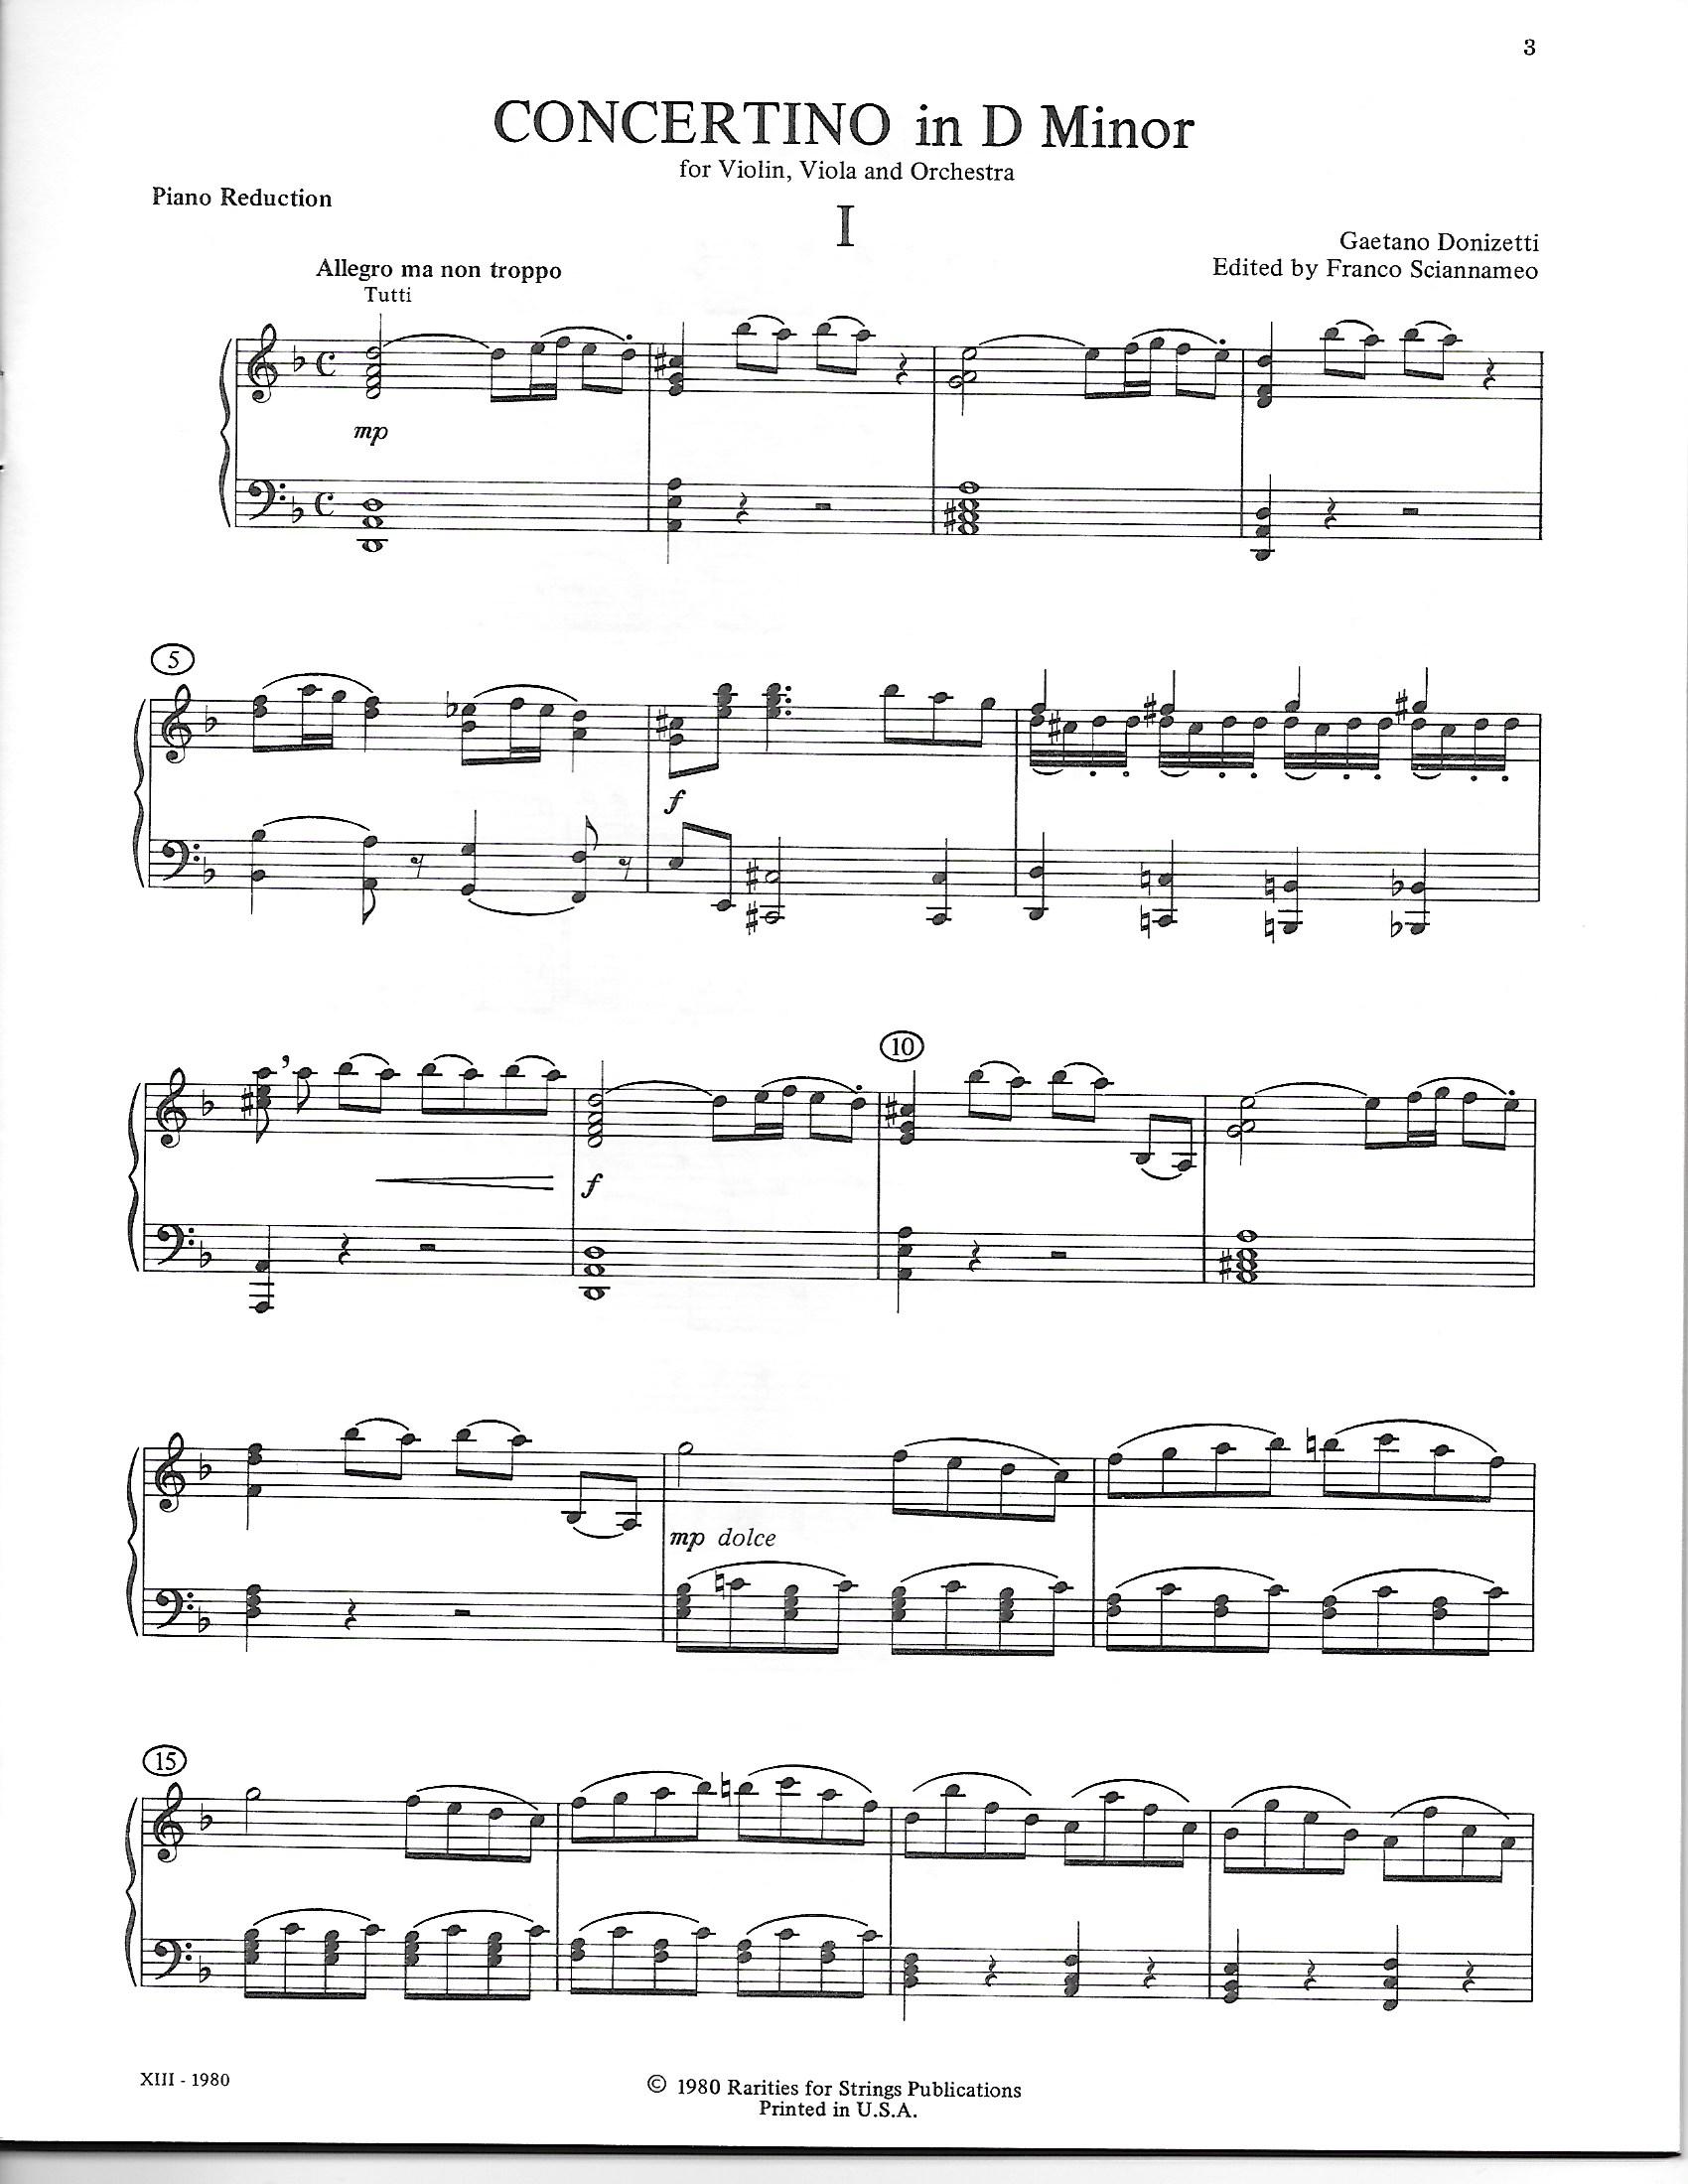 Donizetti, Gaetano - Concertino in D Minor for Violin, Viola & Orchestra, Piano Reduction - Music